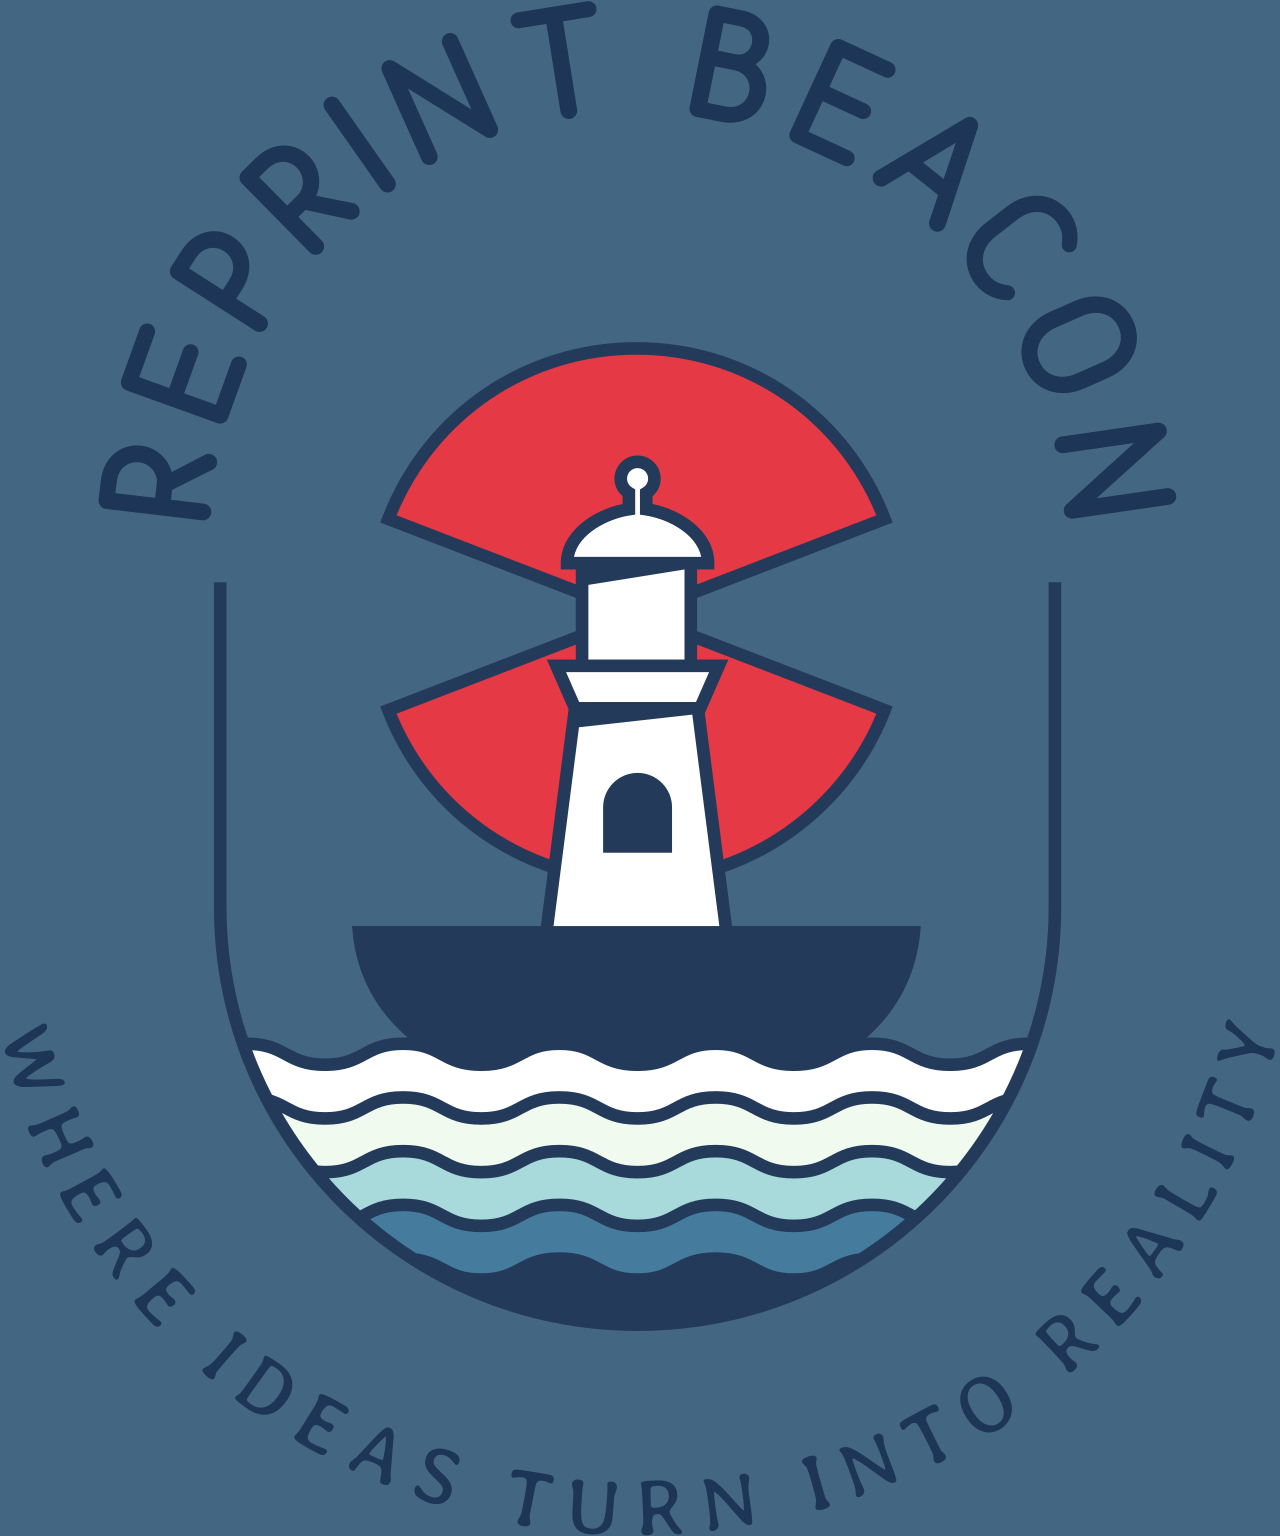 REPRINT BEACON's logo